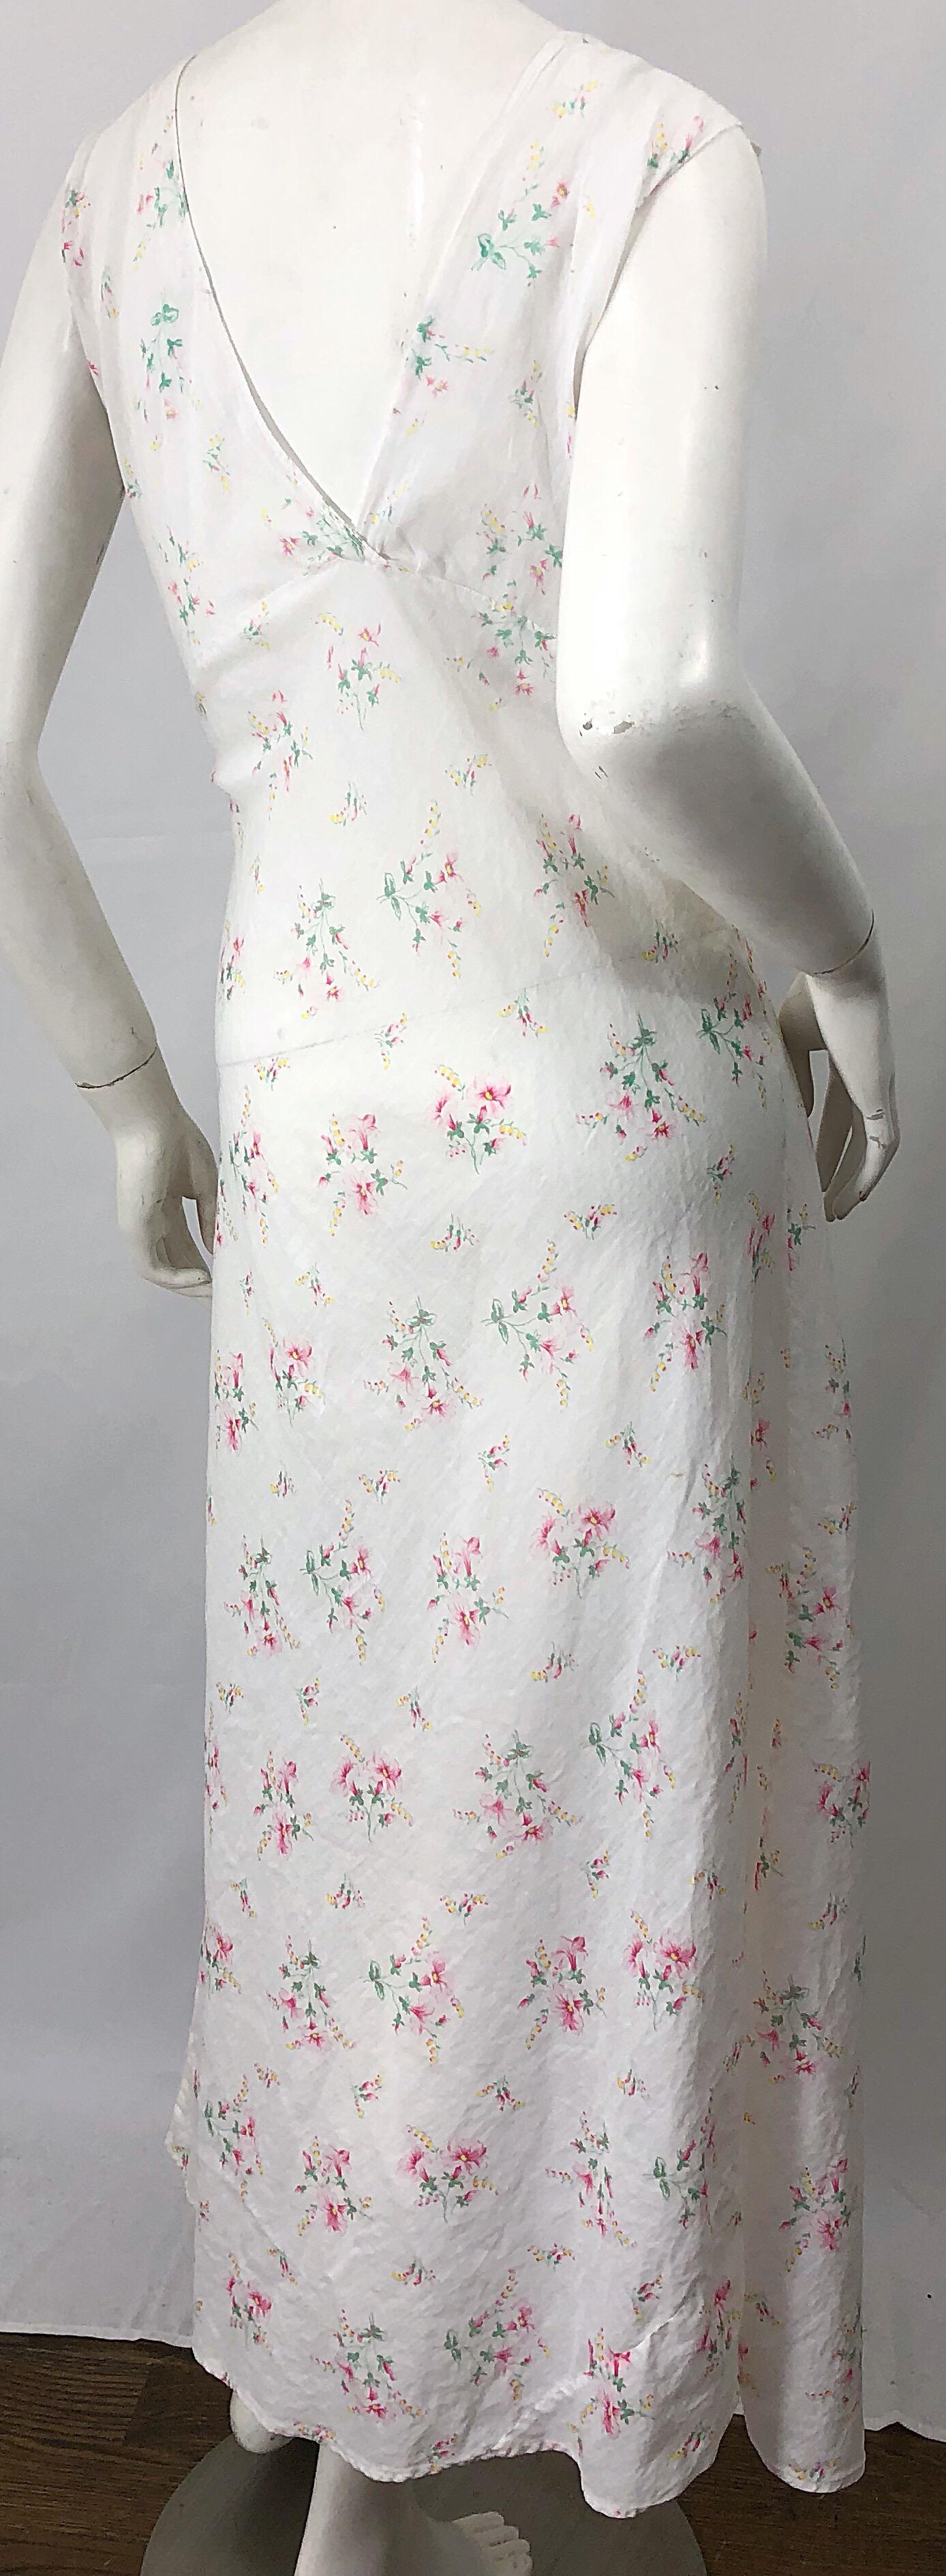 1930s White Flower Print Ruffle Neck Bias Cut Cotton Voile Vintage Maxi Dress For Sale 3